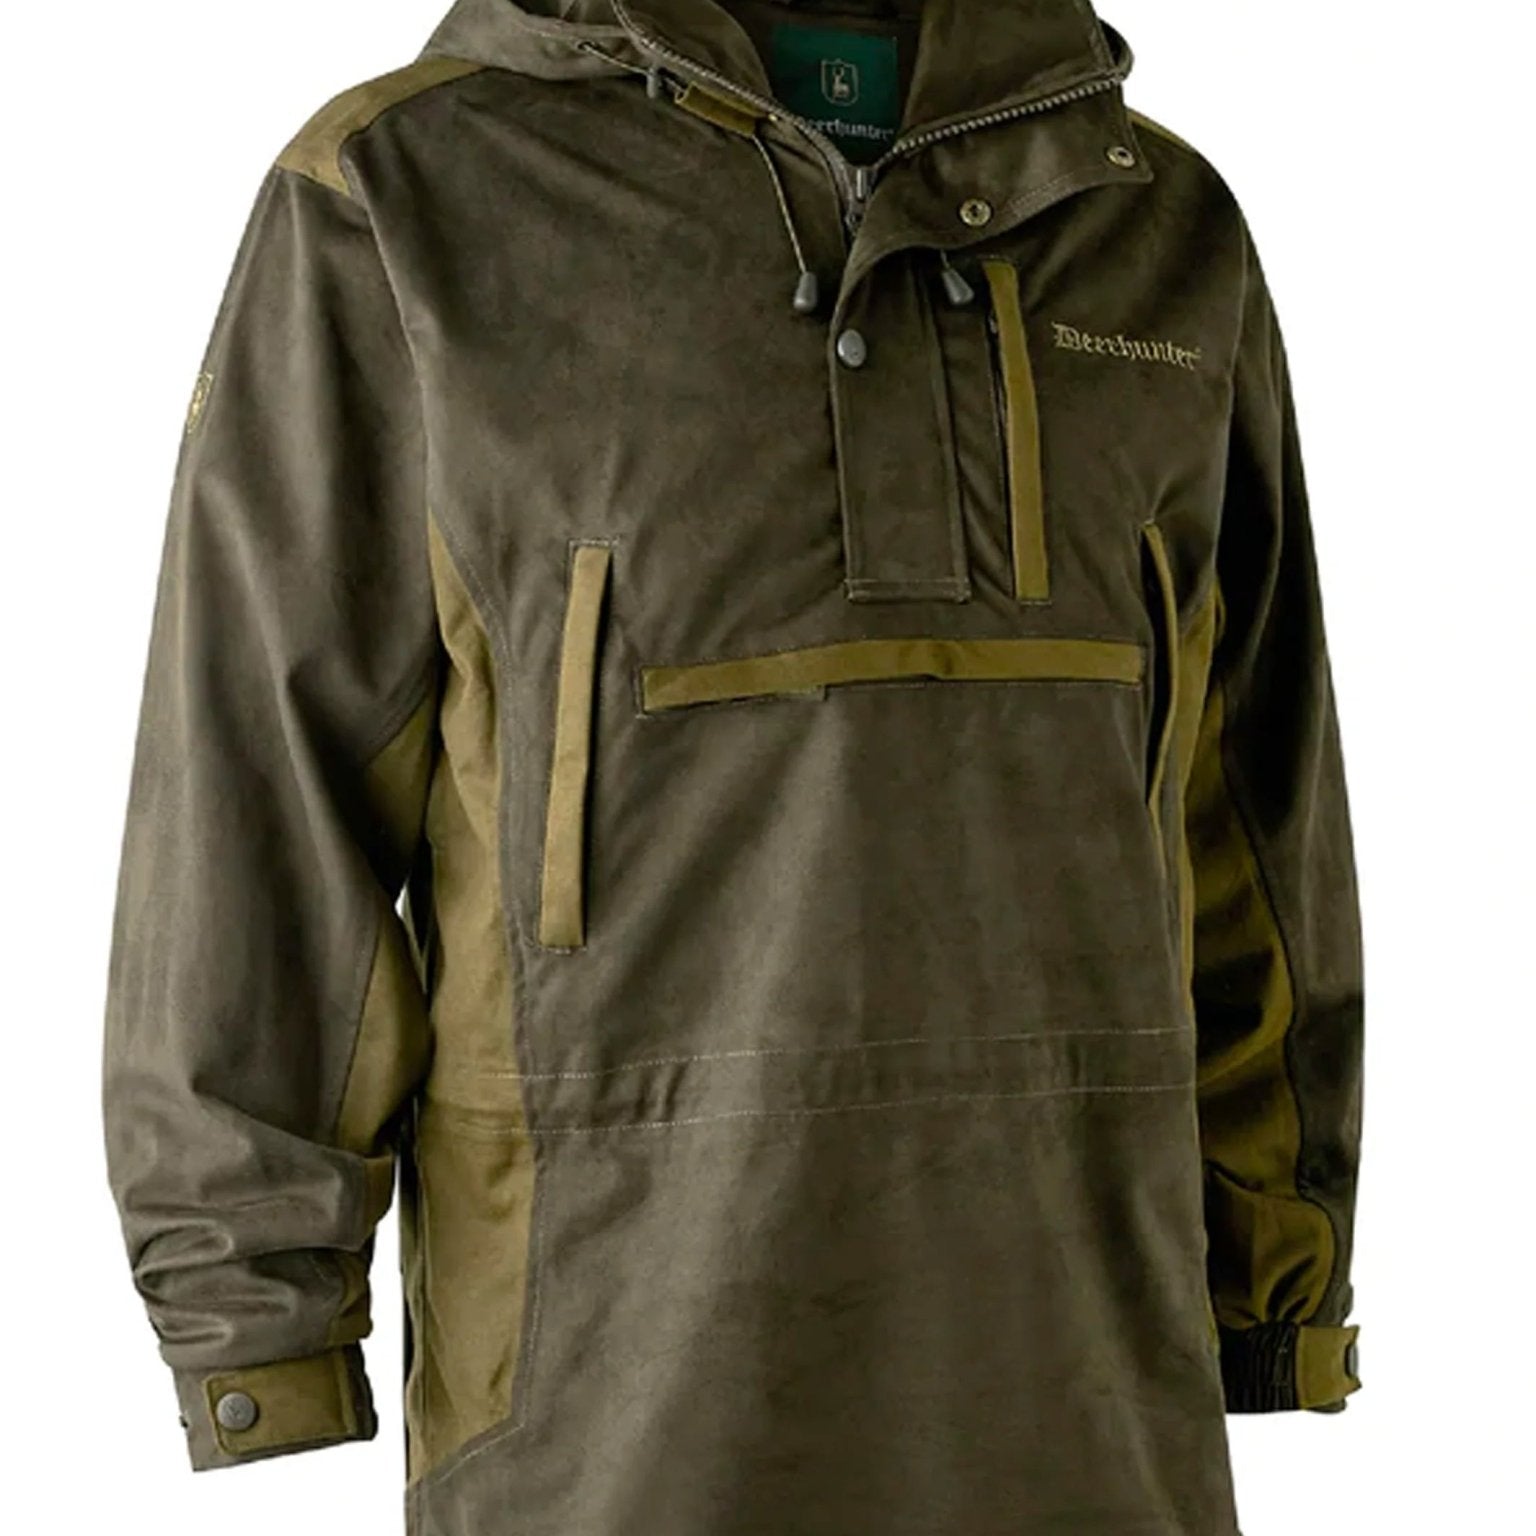 4elementsclothingDeerhunterDeerhunter - waterproof Smock Mens coat and jacket Explore, Breathable and taped seamsOuterwear5778-573-48